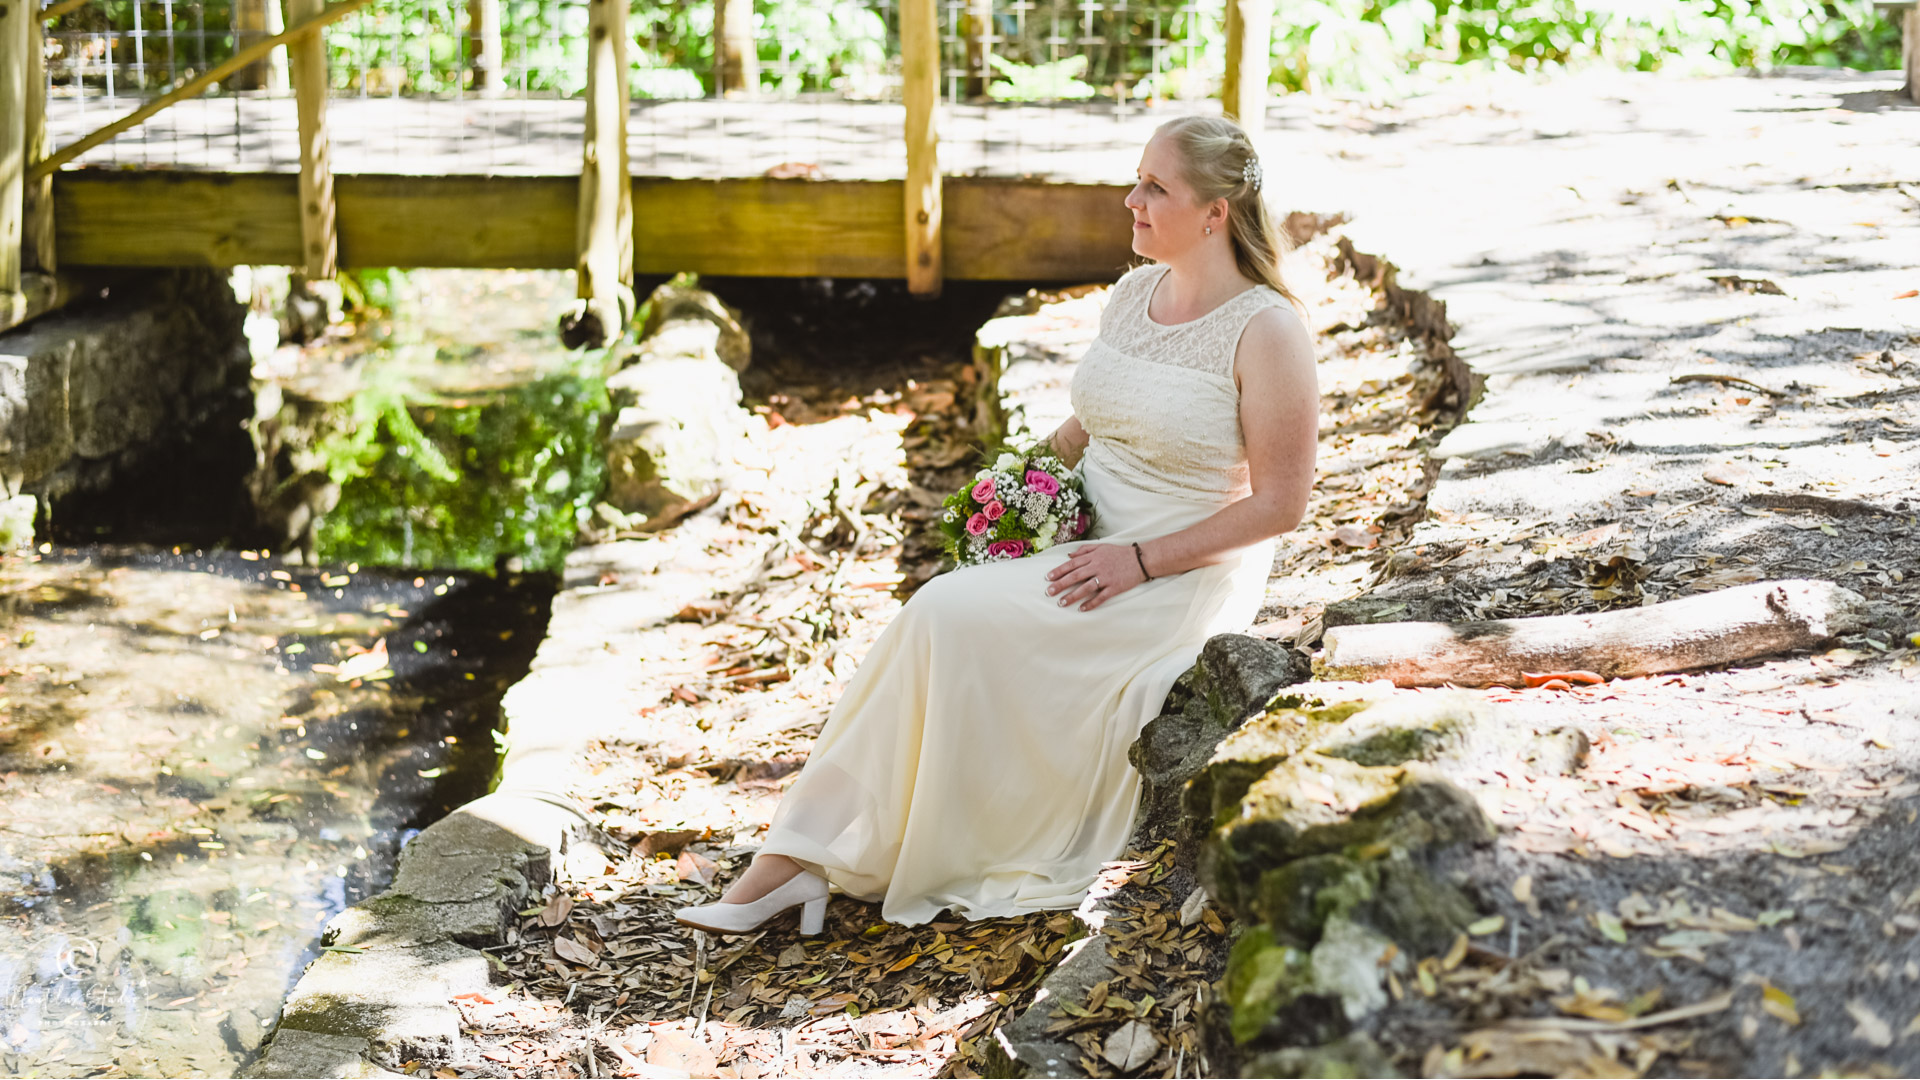 Boda en Parque Orlando, foto de la novia en Dickinson Azalea Garden en Orlando